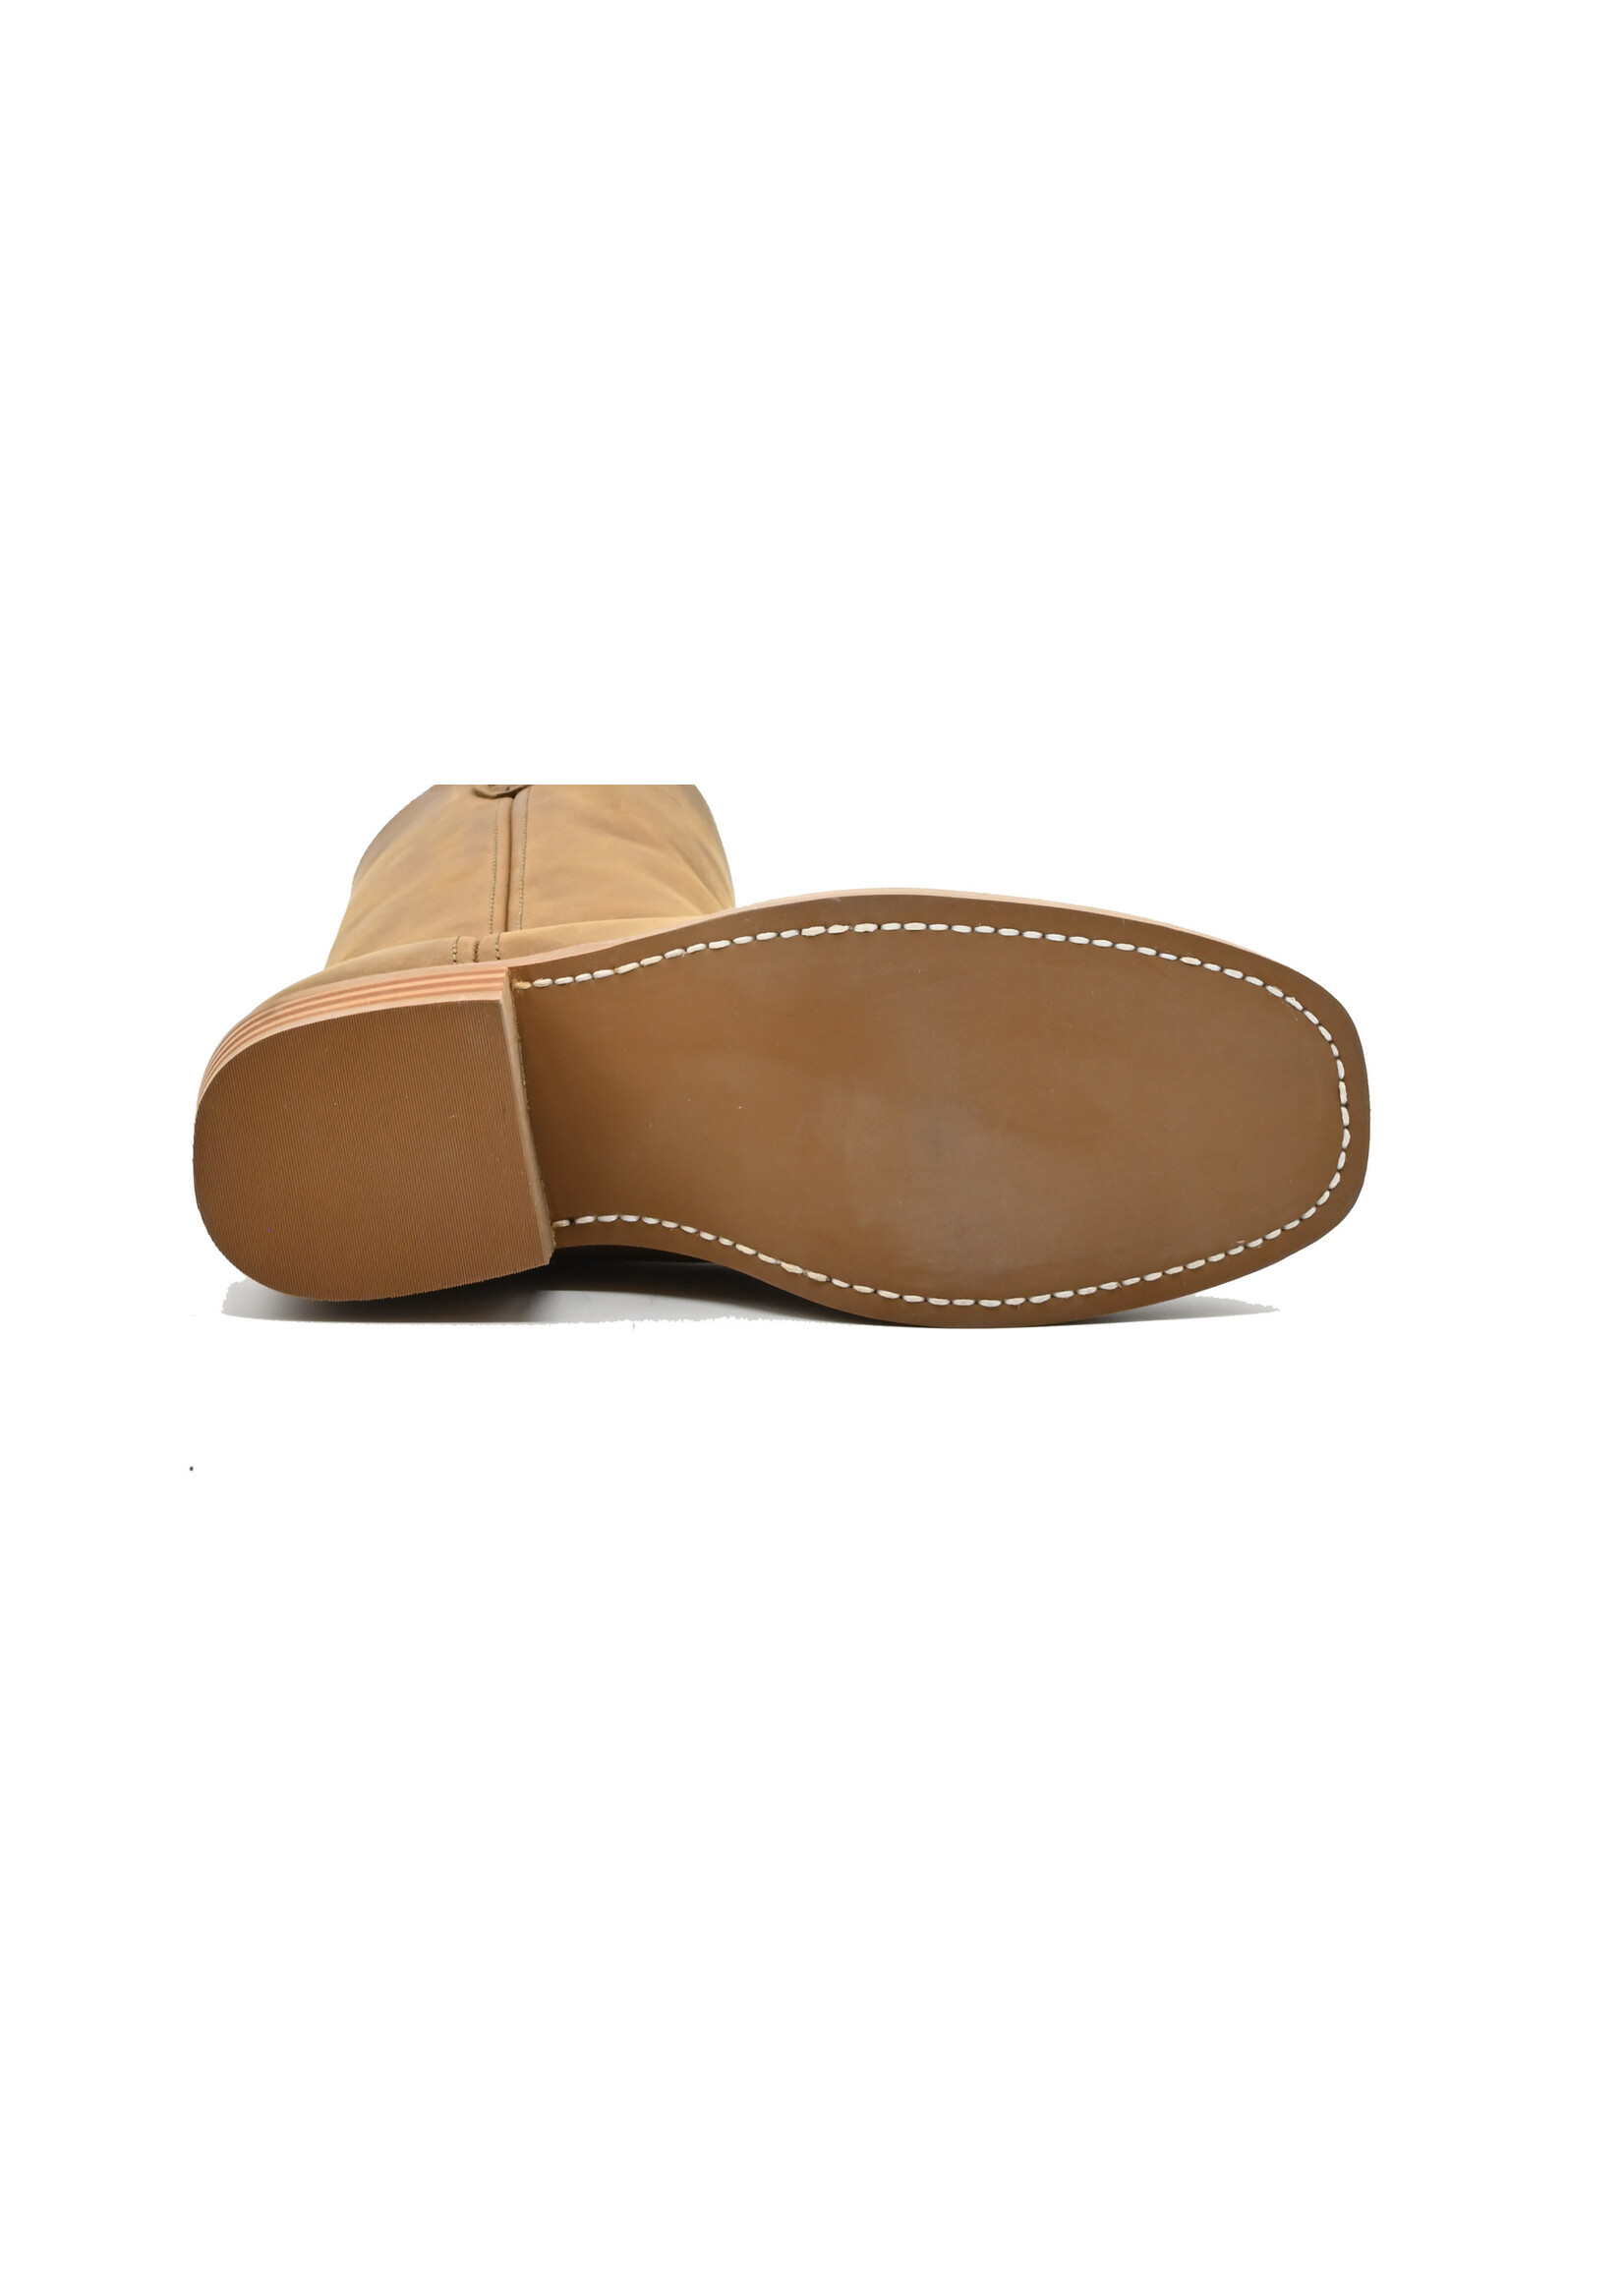 Dingo DI07212 - Brown Boot (Size 7.5D, 8D, 11.5D)